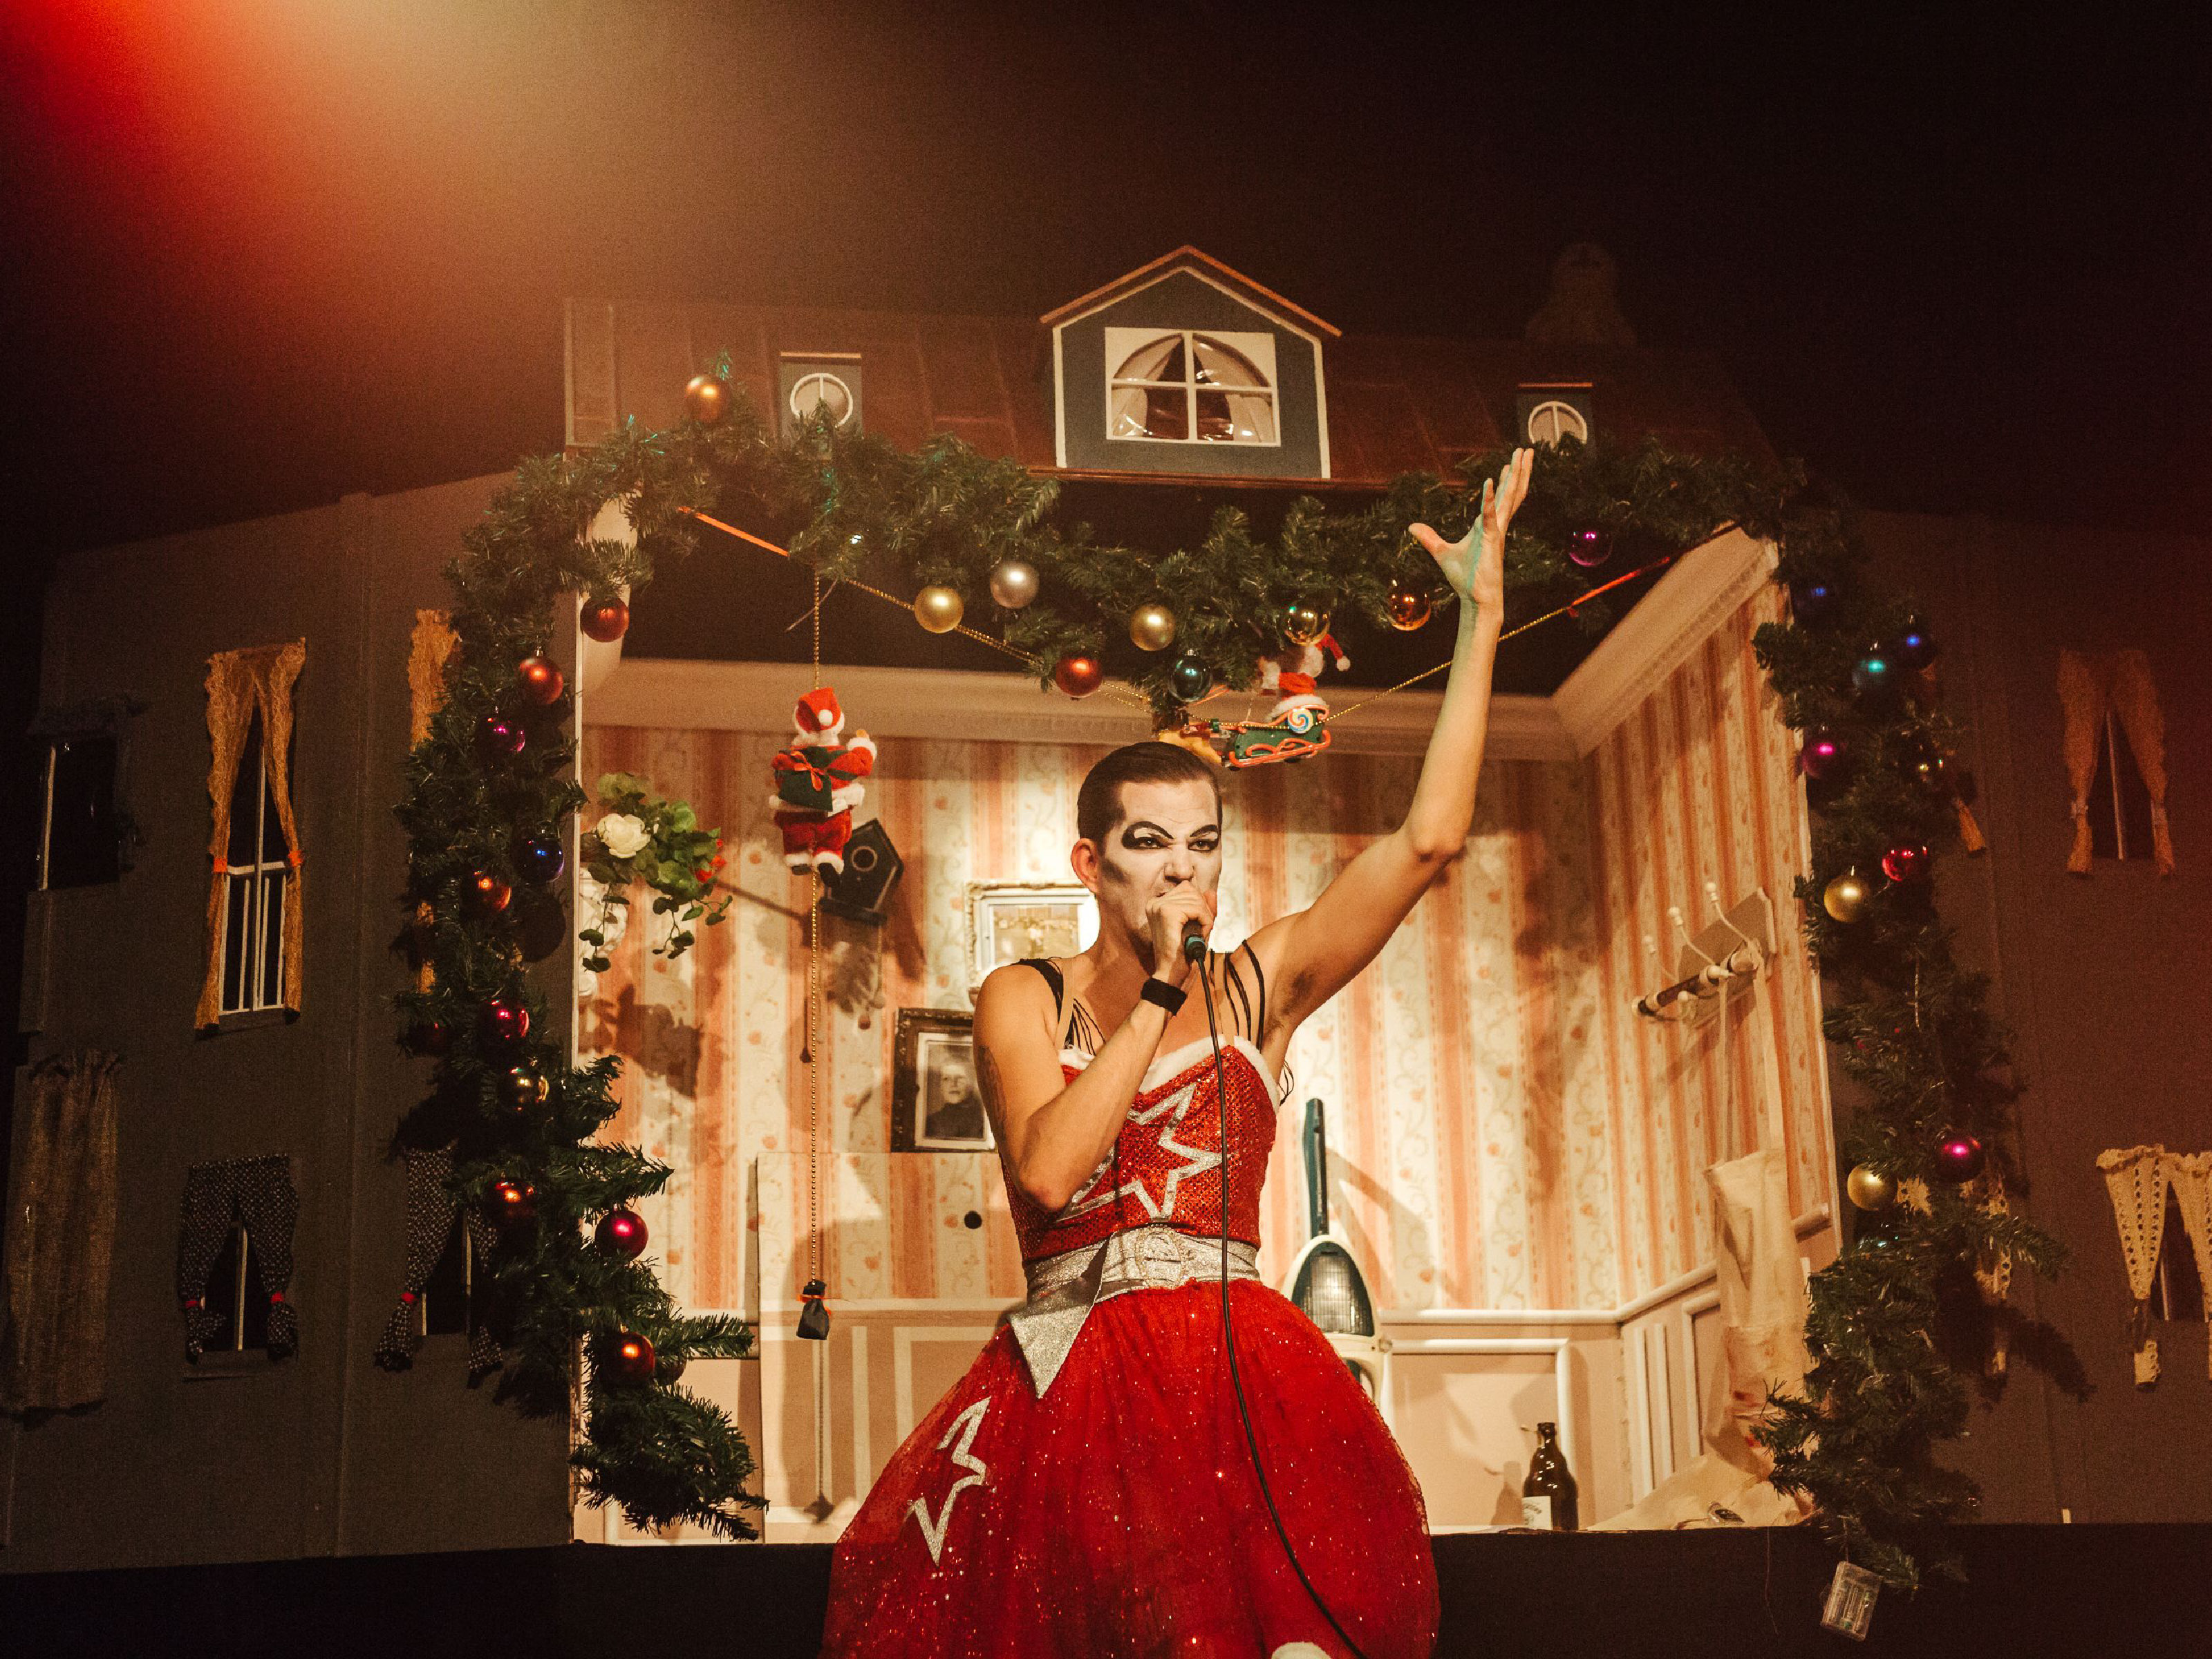 Jarnoth steht in rotem Partykleid mit Glitzerstern und Drag-Make-up vor einem großen Puppenhauszimmer mit Weihnachtsschmuck und singt leidenschaftlich ein Mikrofon, das er in seiner linken Hand hält. Sein rechter Arm ist weit nach oben gestreckt.